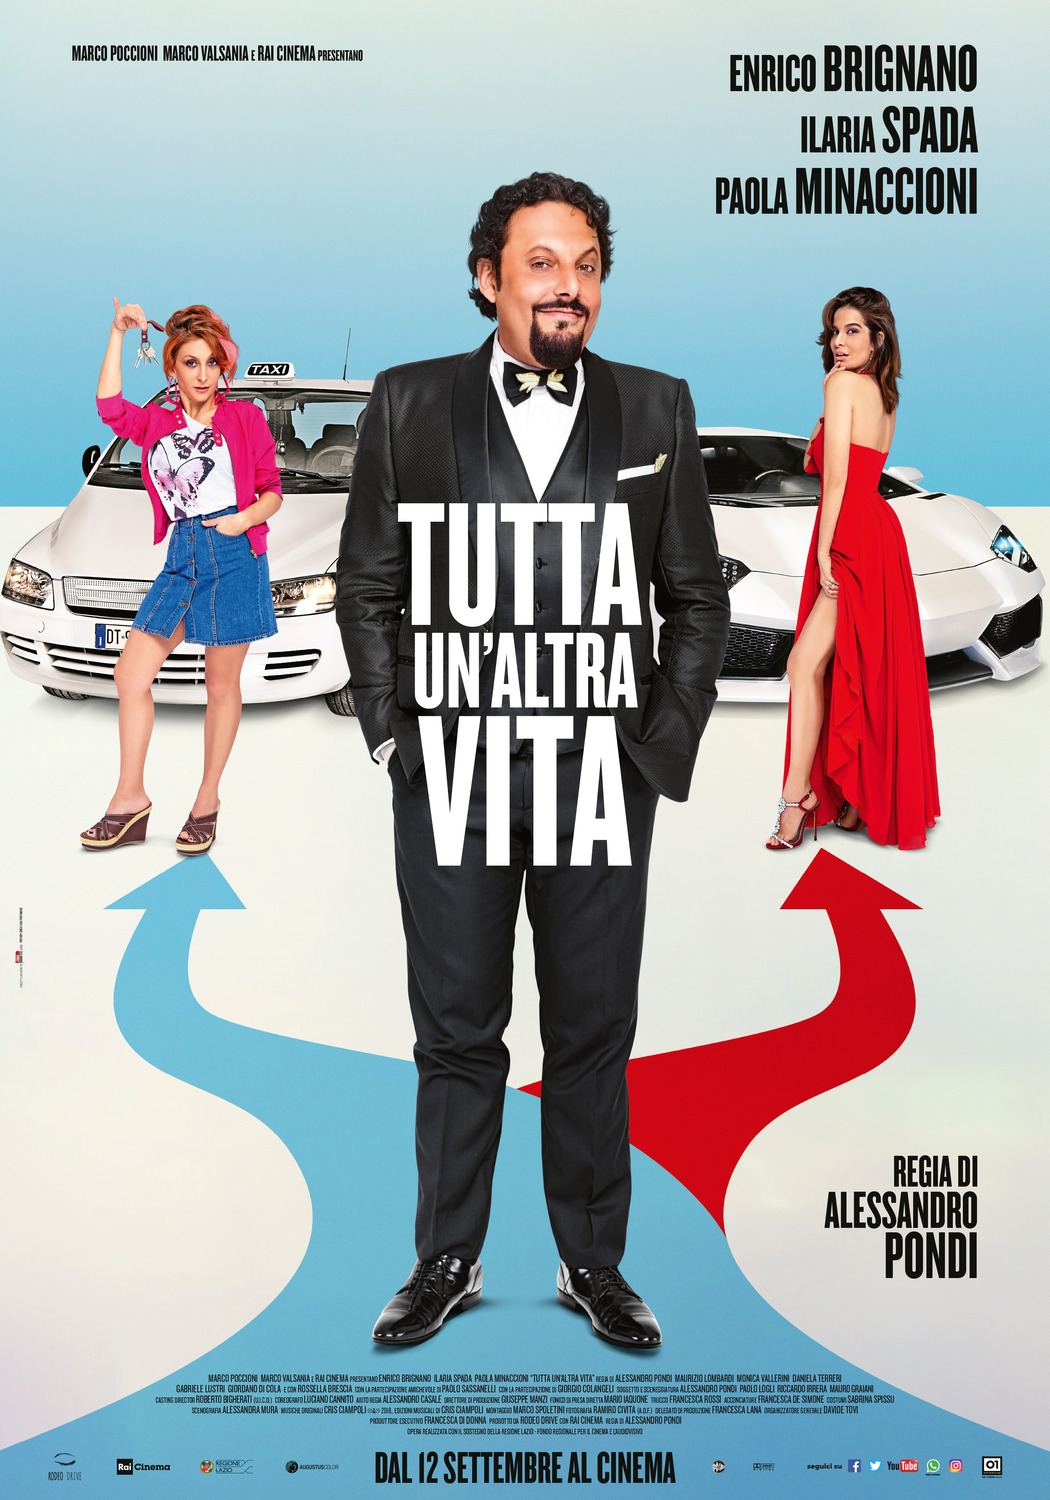 Extra Large Movie Poster Image for Tutta un'altra vita 